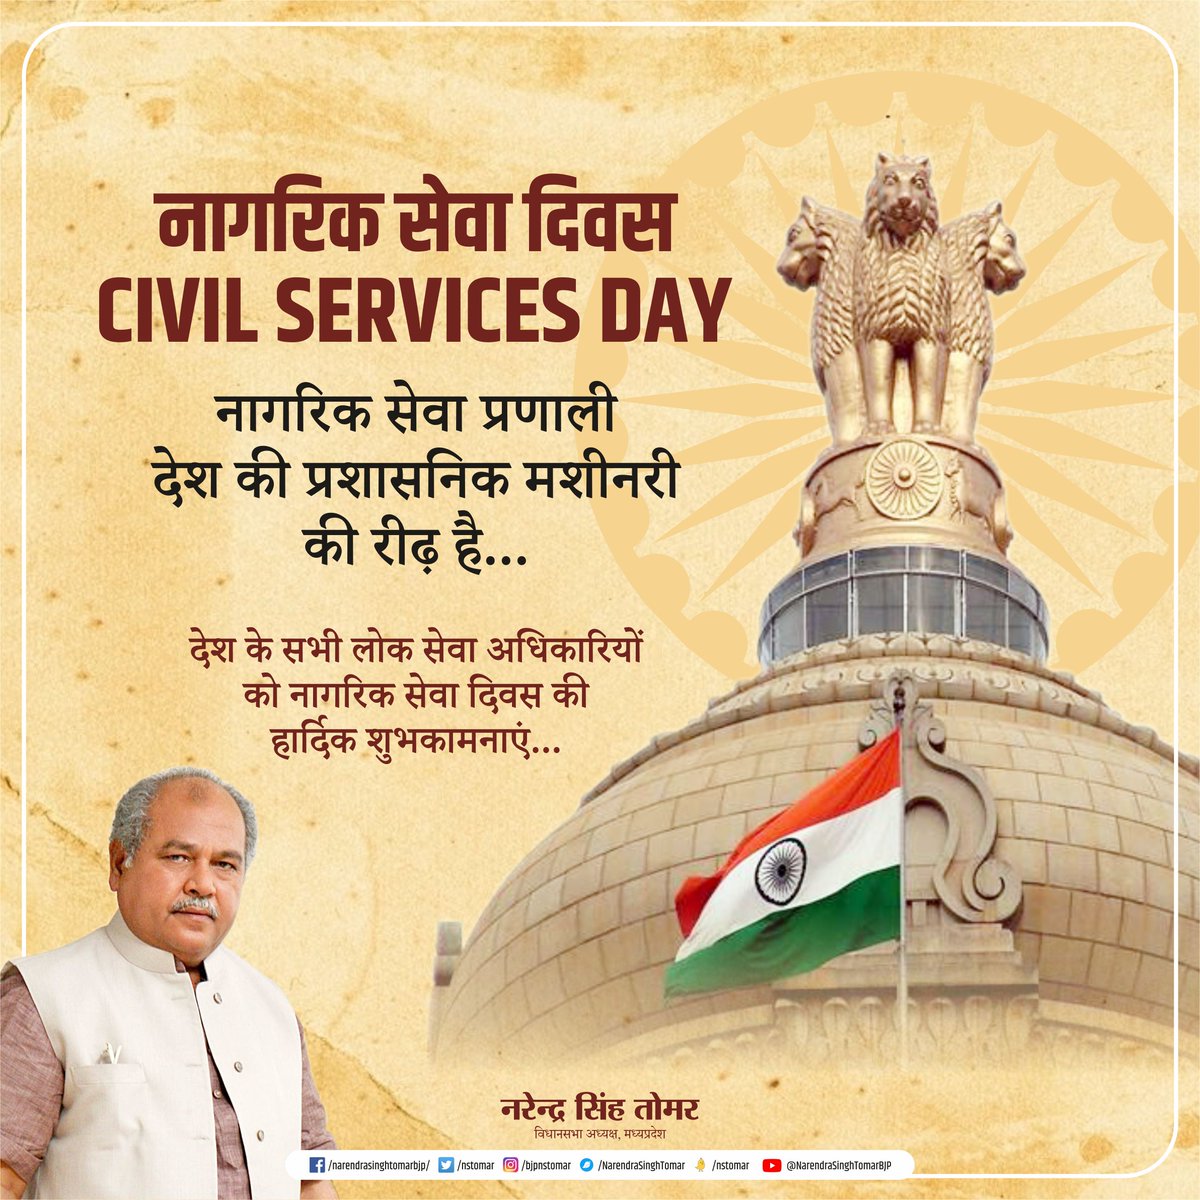 देश के सभी लोक सेवा अधिकारियों को नागरिक सेवा दिवस की हार्दिक शुभकामनाएं... #NationalCivilServicesDay